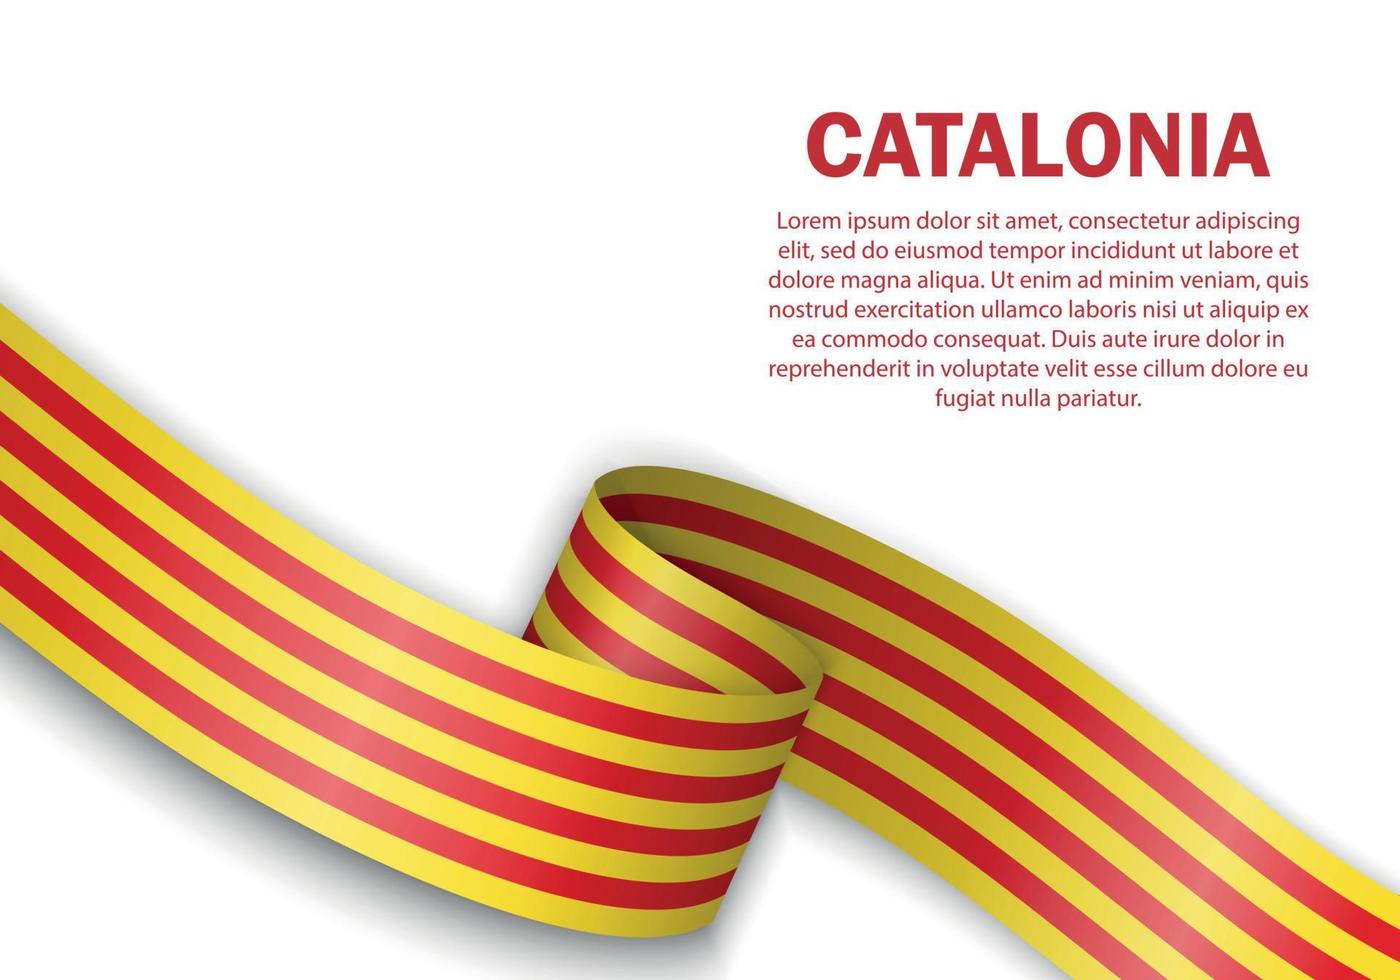 wehende Flagge von Katalonien auf weißem Hintergrund vektor